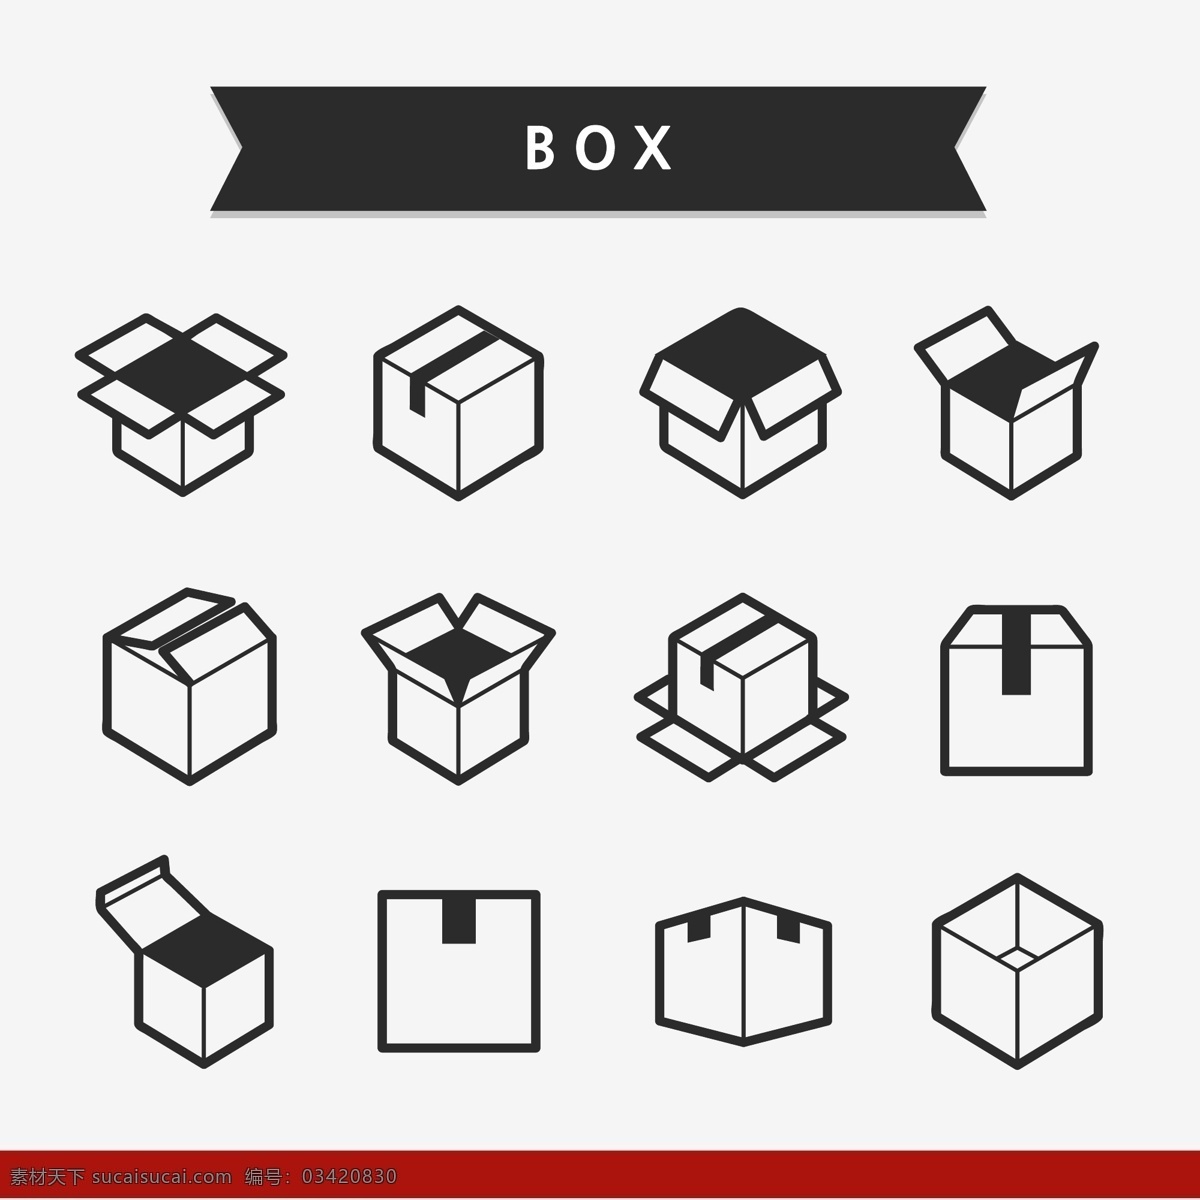 图标 矢量图标 卡通图标 矢量 盒子 元素 图标素材